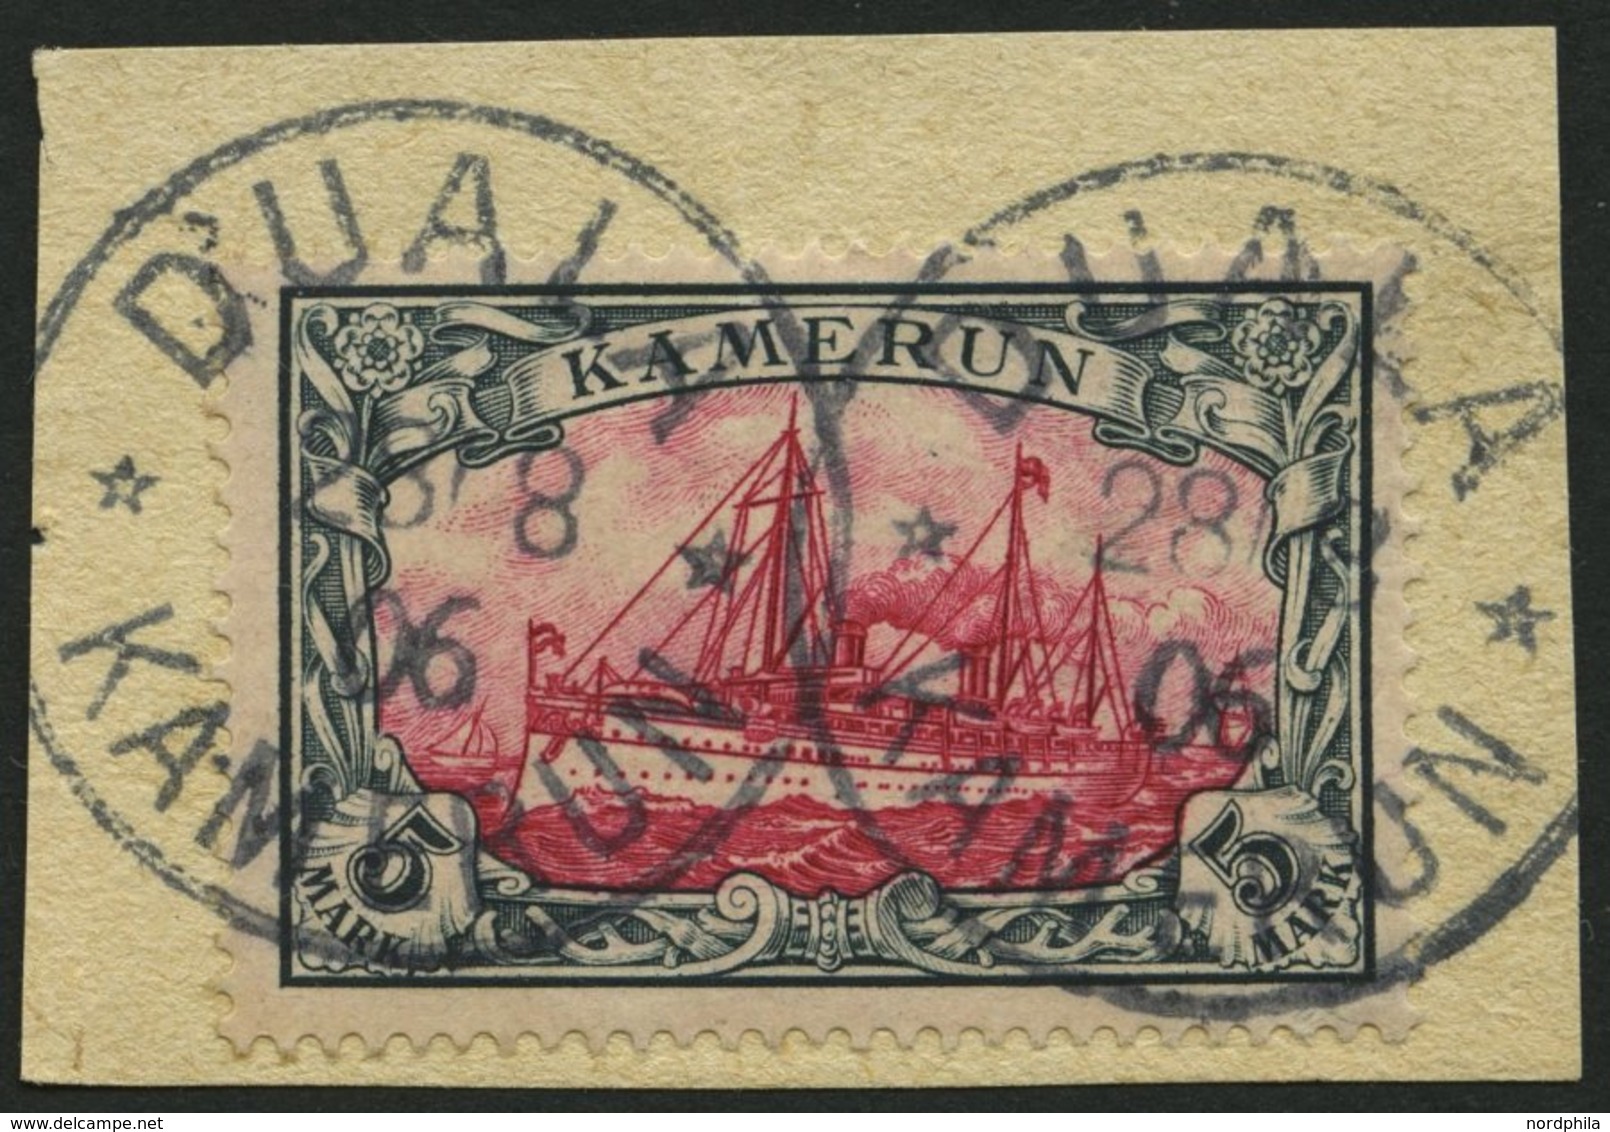 KAMERUN 19 BrfStk, 1900, 5 M. Grünschwarz/rot, Ohne Wz., Stempel DUALA, Prachtbriefstück, Mi. (600.-) - Camerun